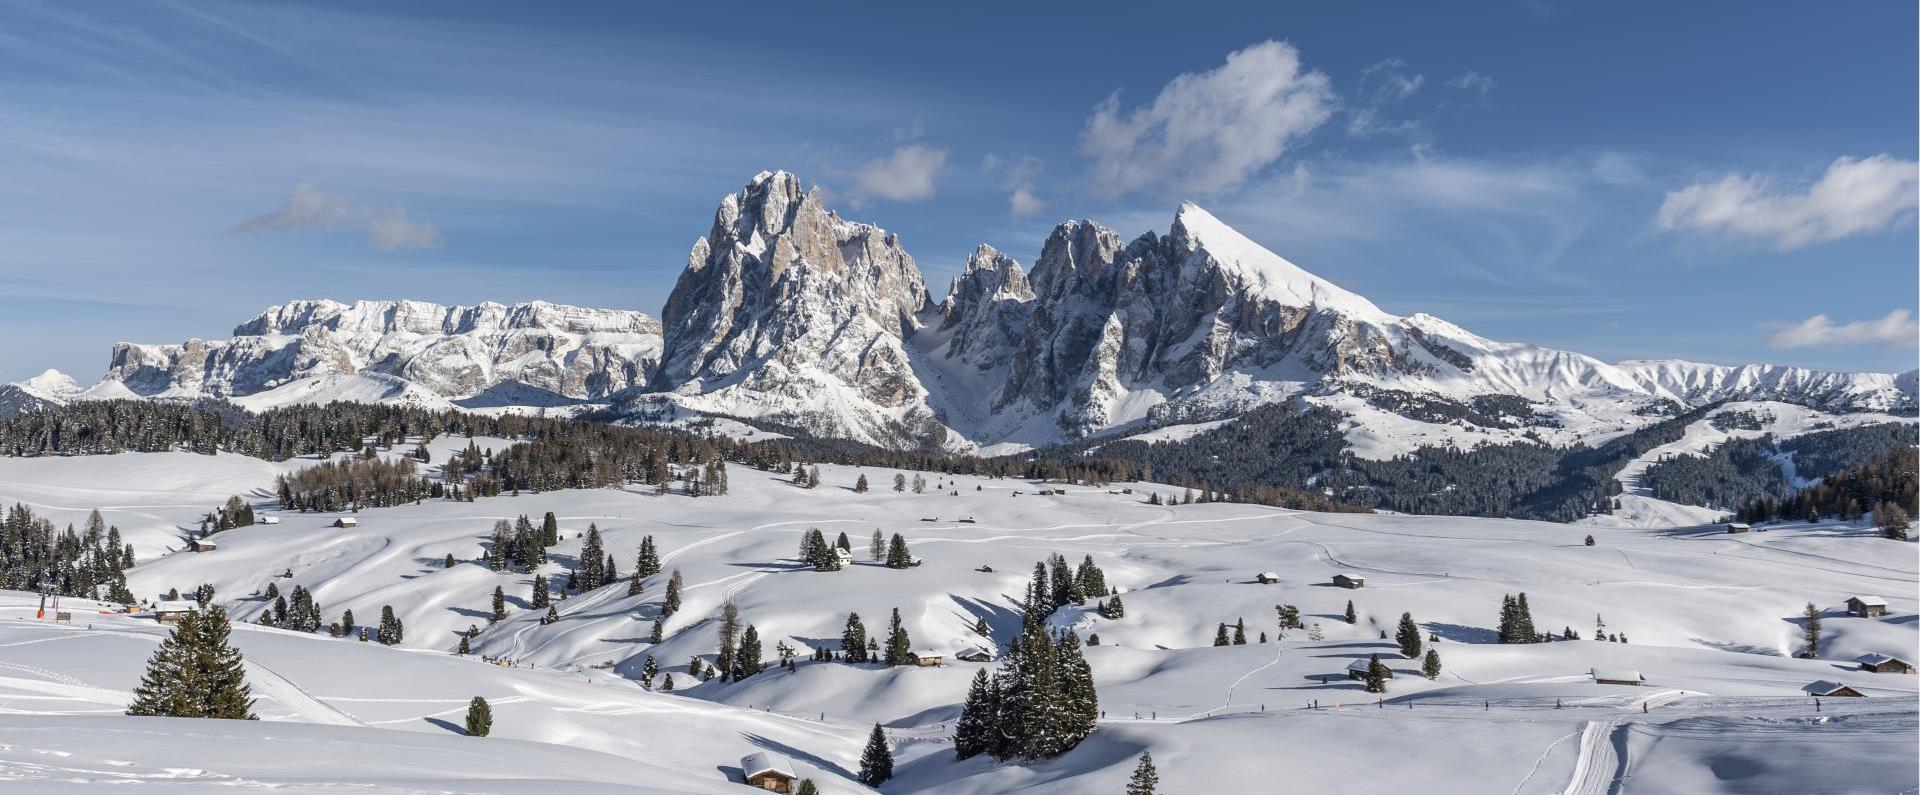 Winterparadies Seiser Alm in den Dolomiten